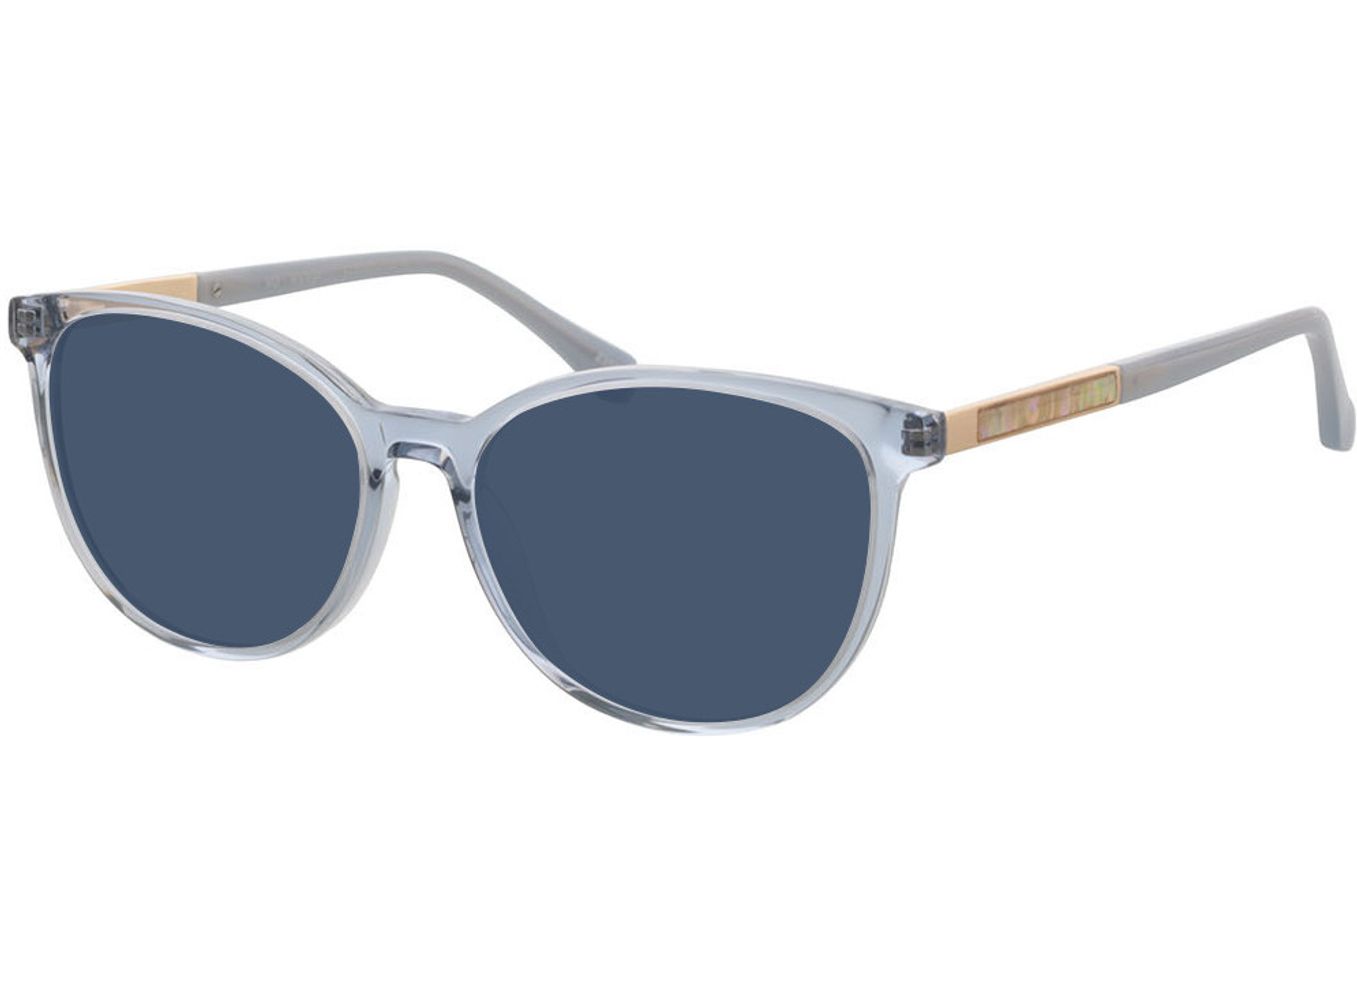 Malaga - blau Sonnenbrille ohne Sehstärke, Vollrand, Cateye von Brille24 Collection